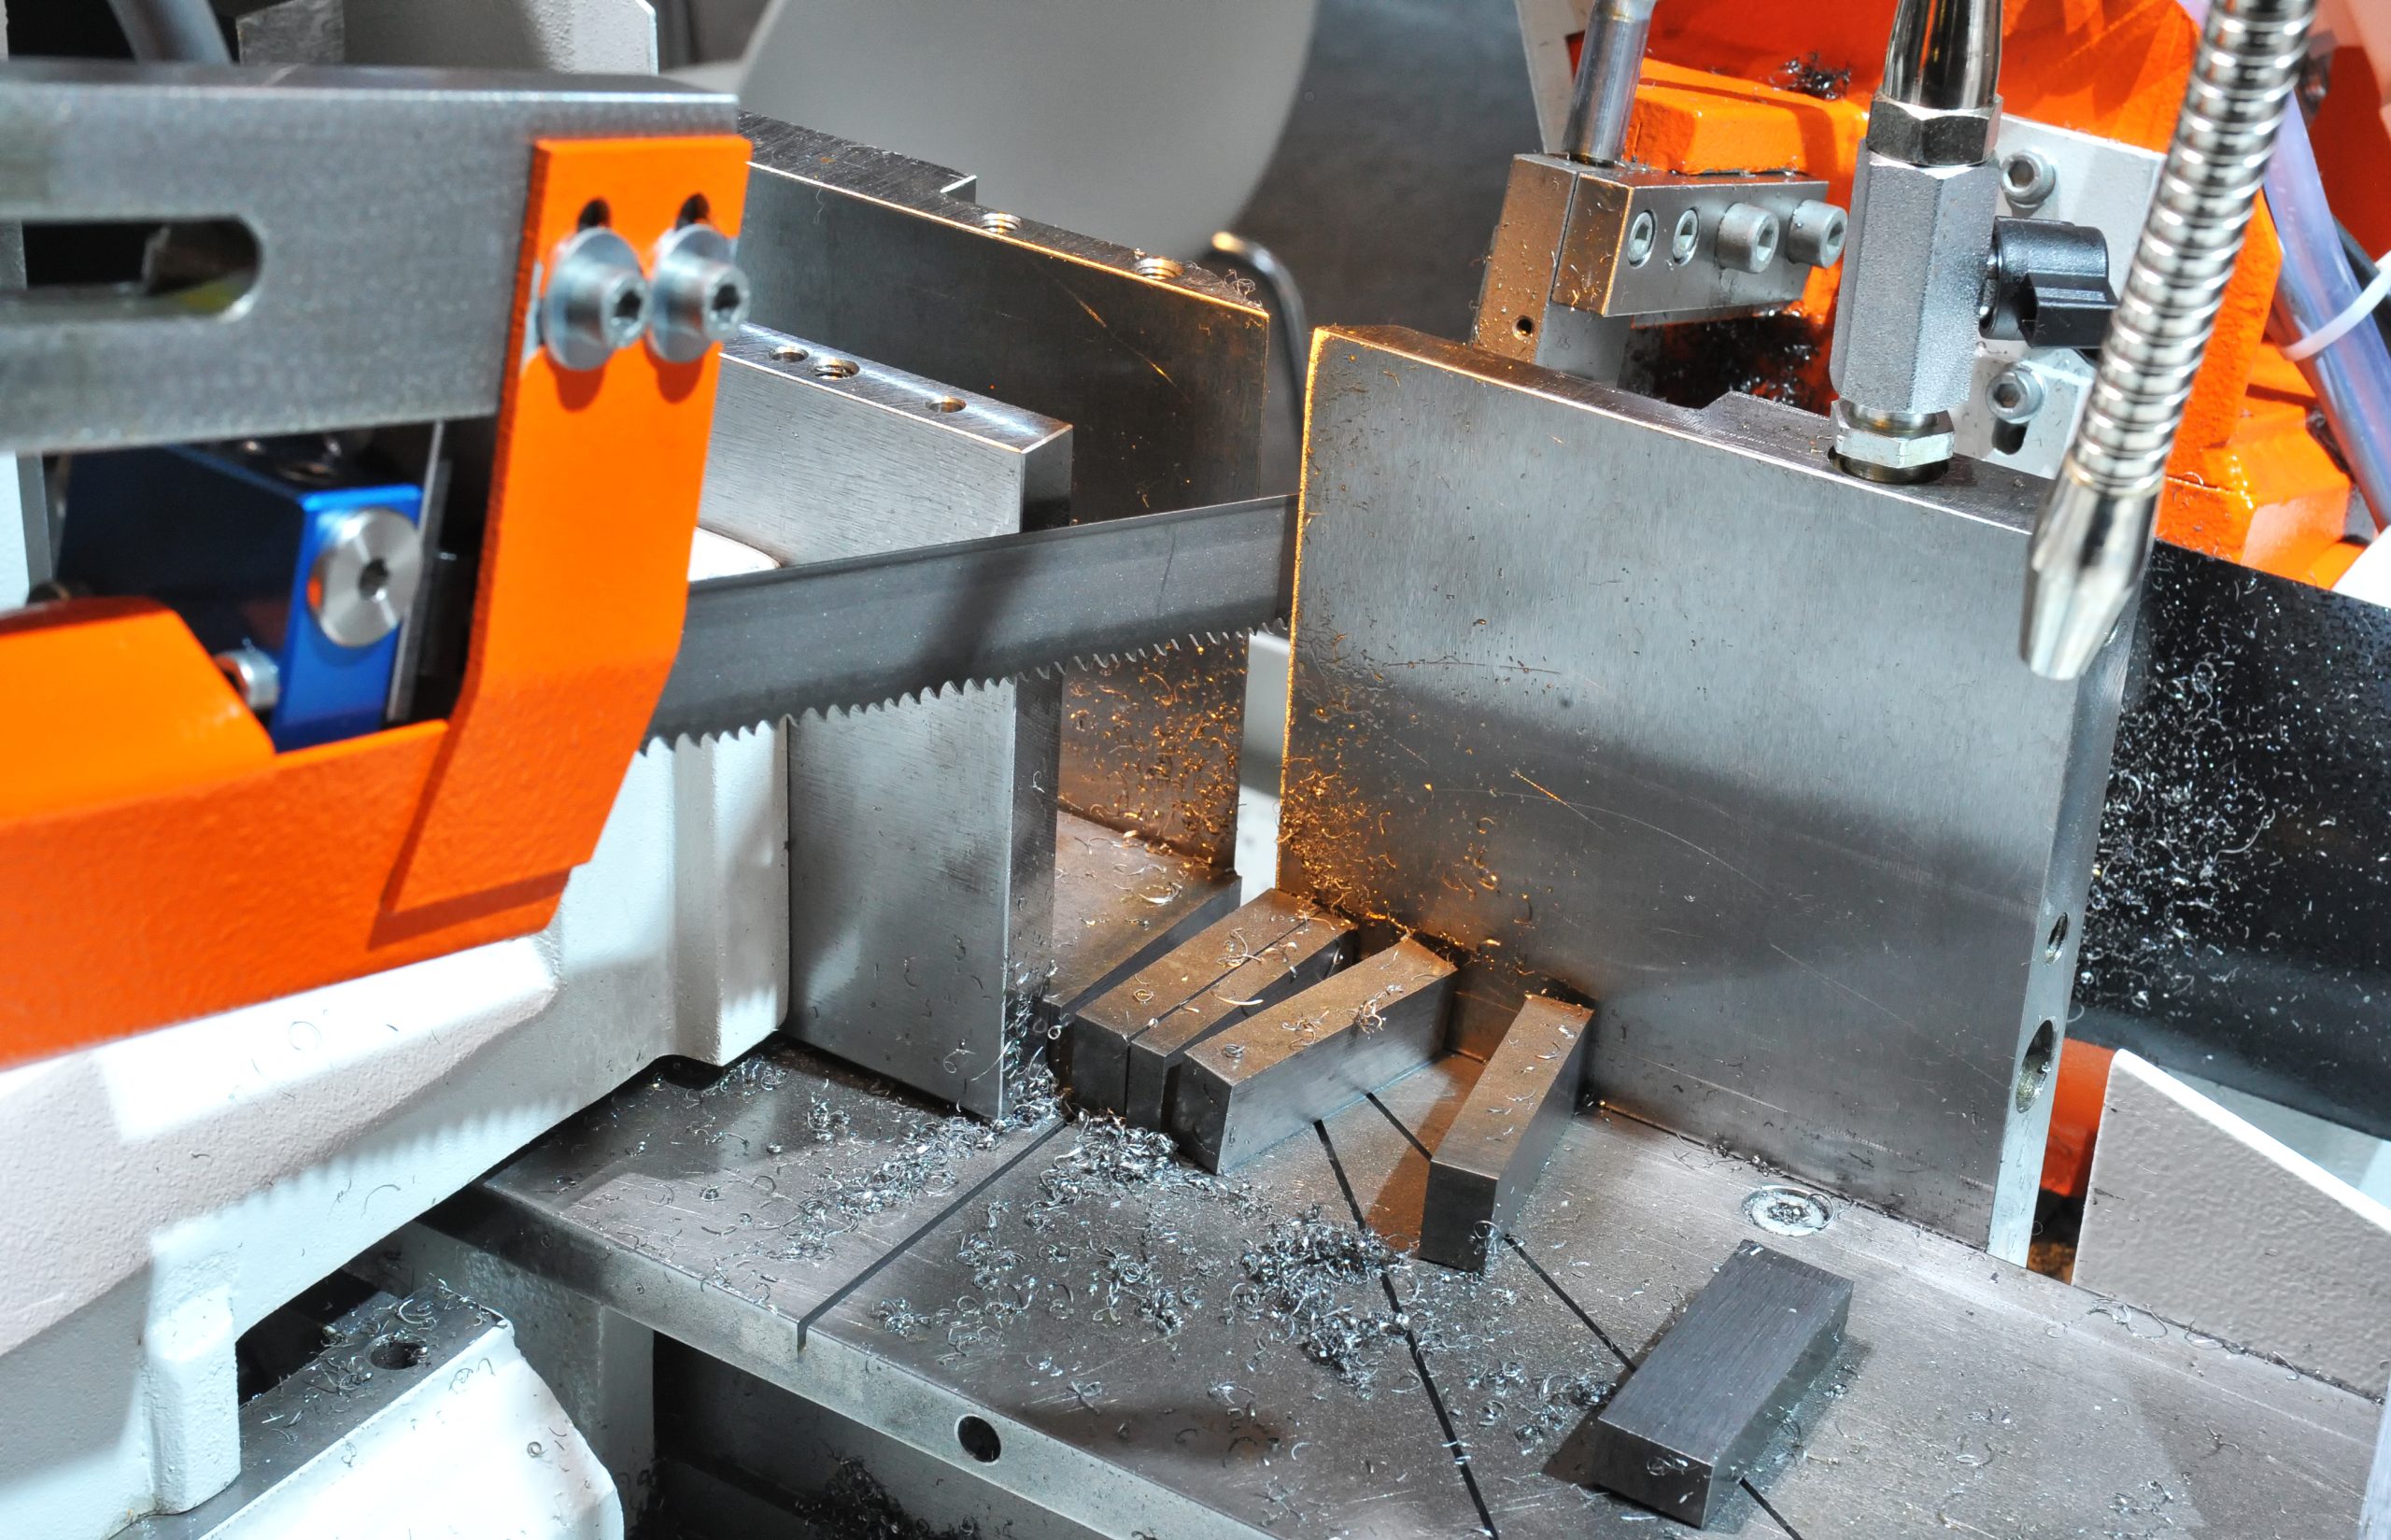 Um Metall zu sägen bedarf es spezieller Werkzeuge. Foto ©Alterfalter stock adobe